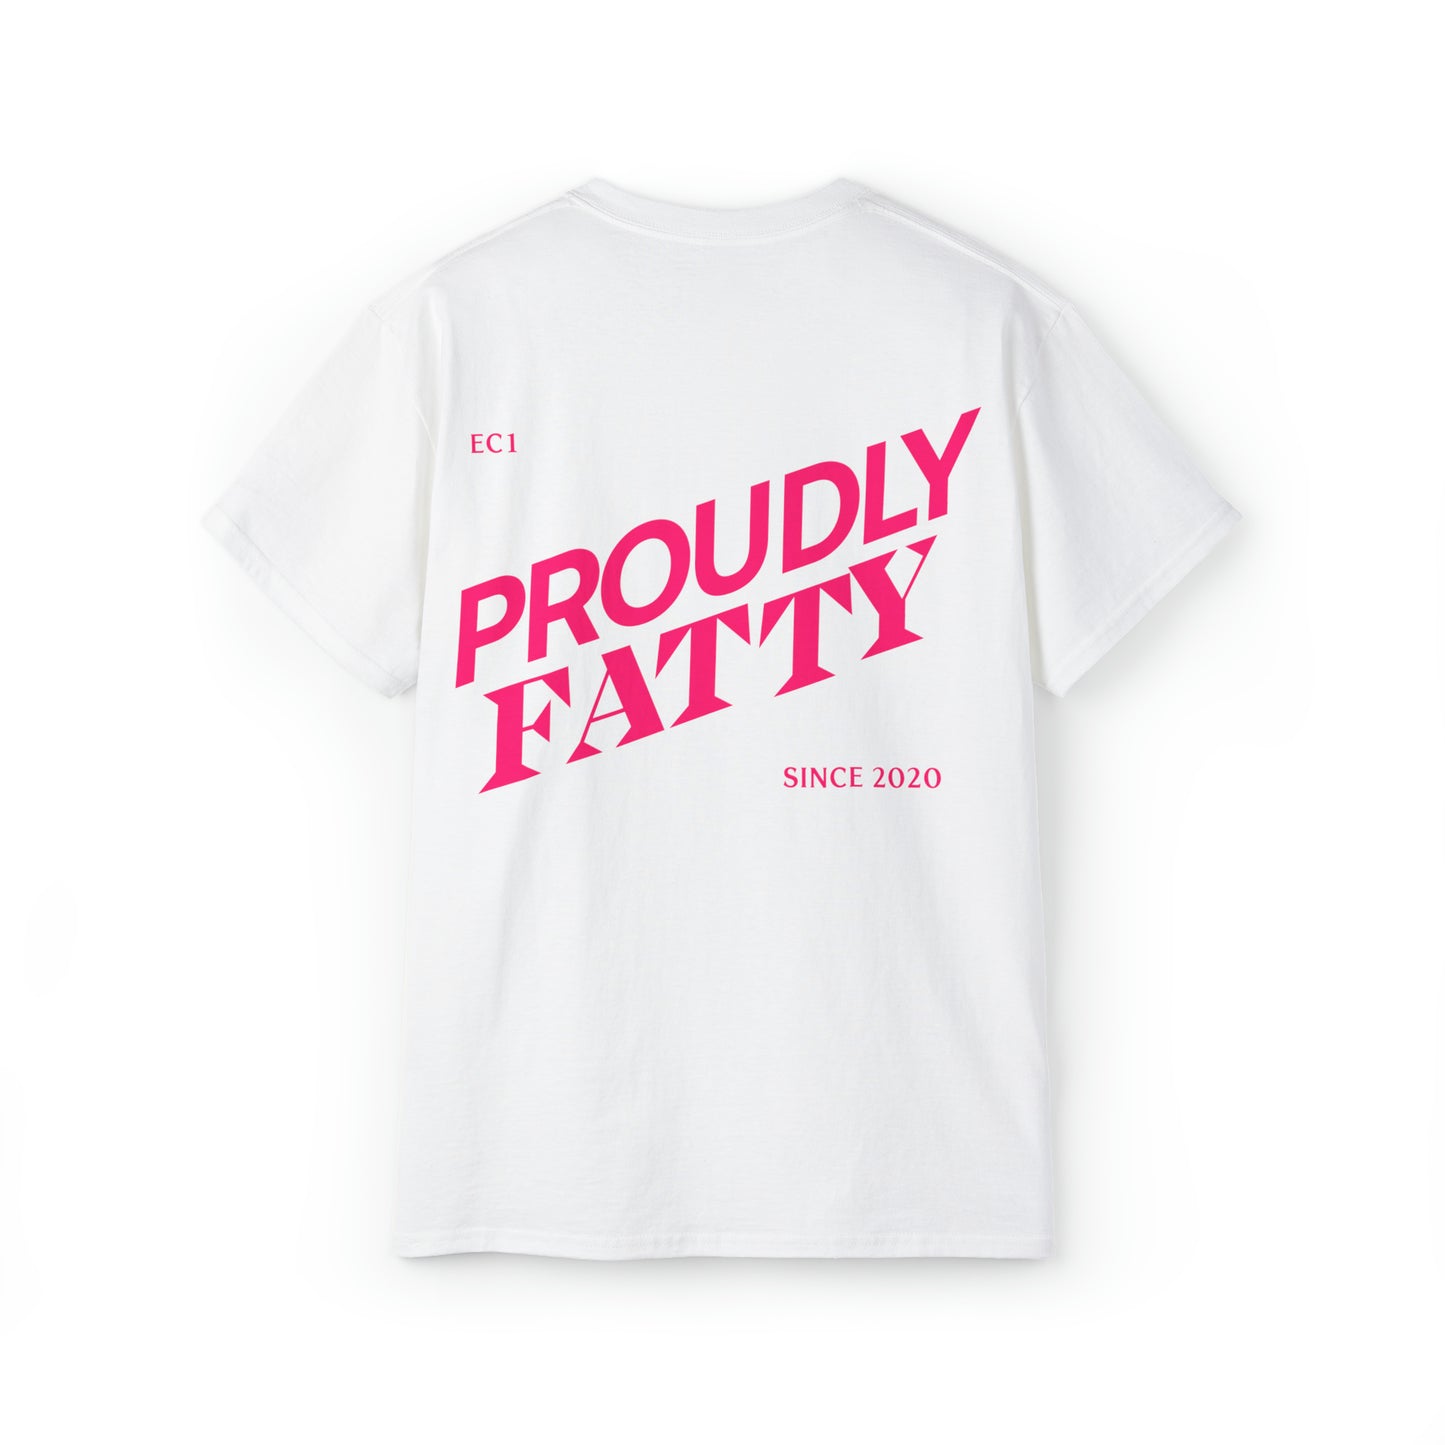 Proudly Fatty Tee - White